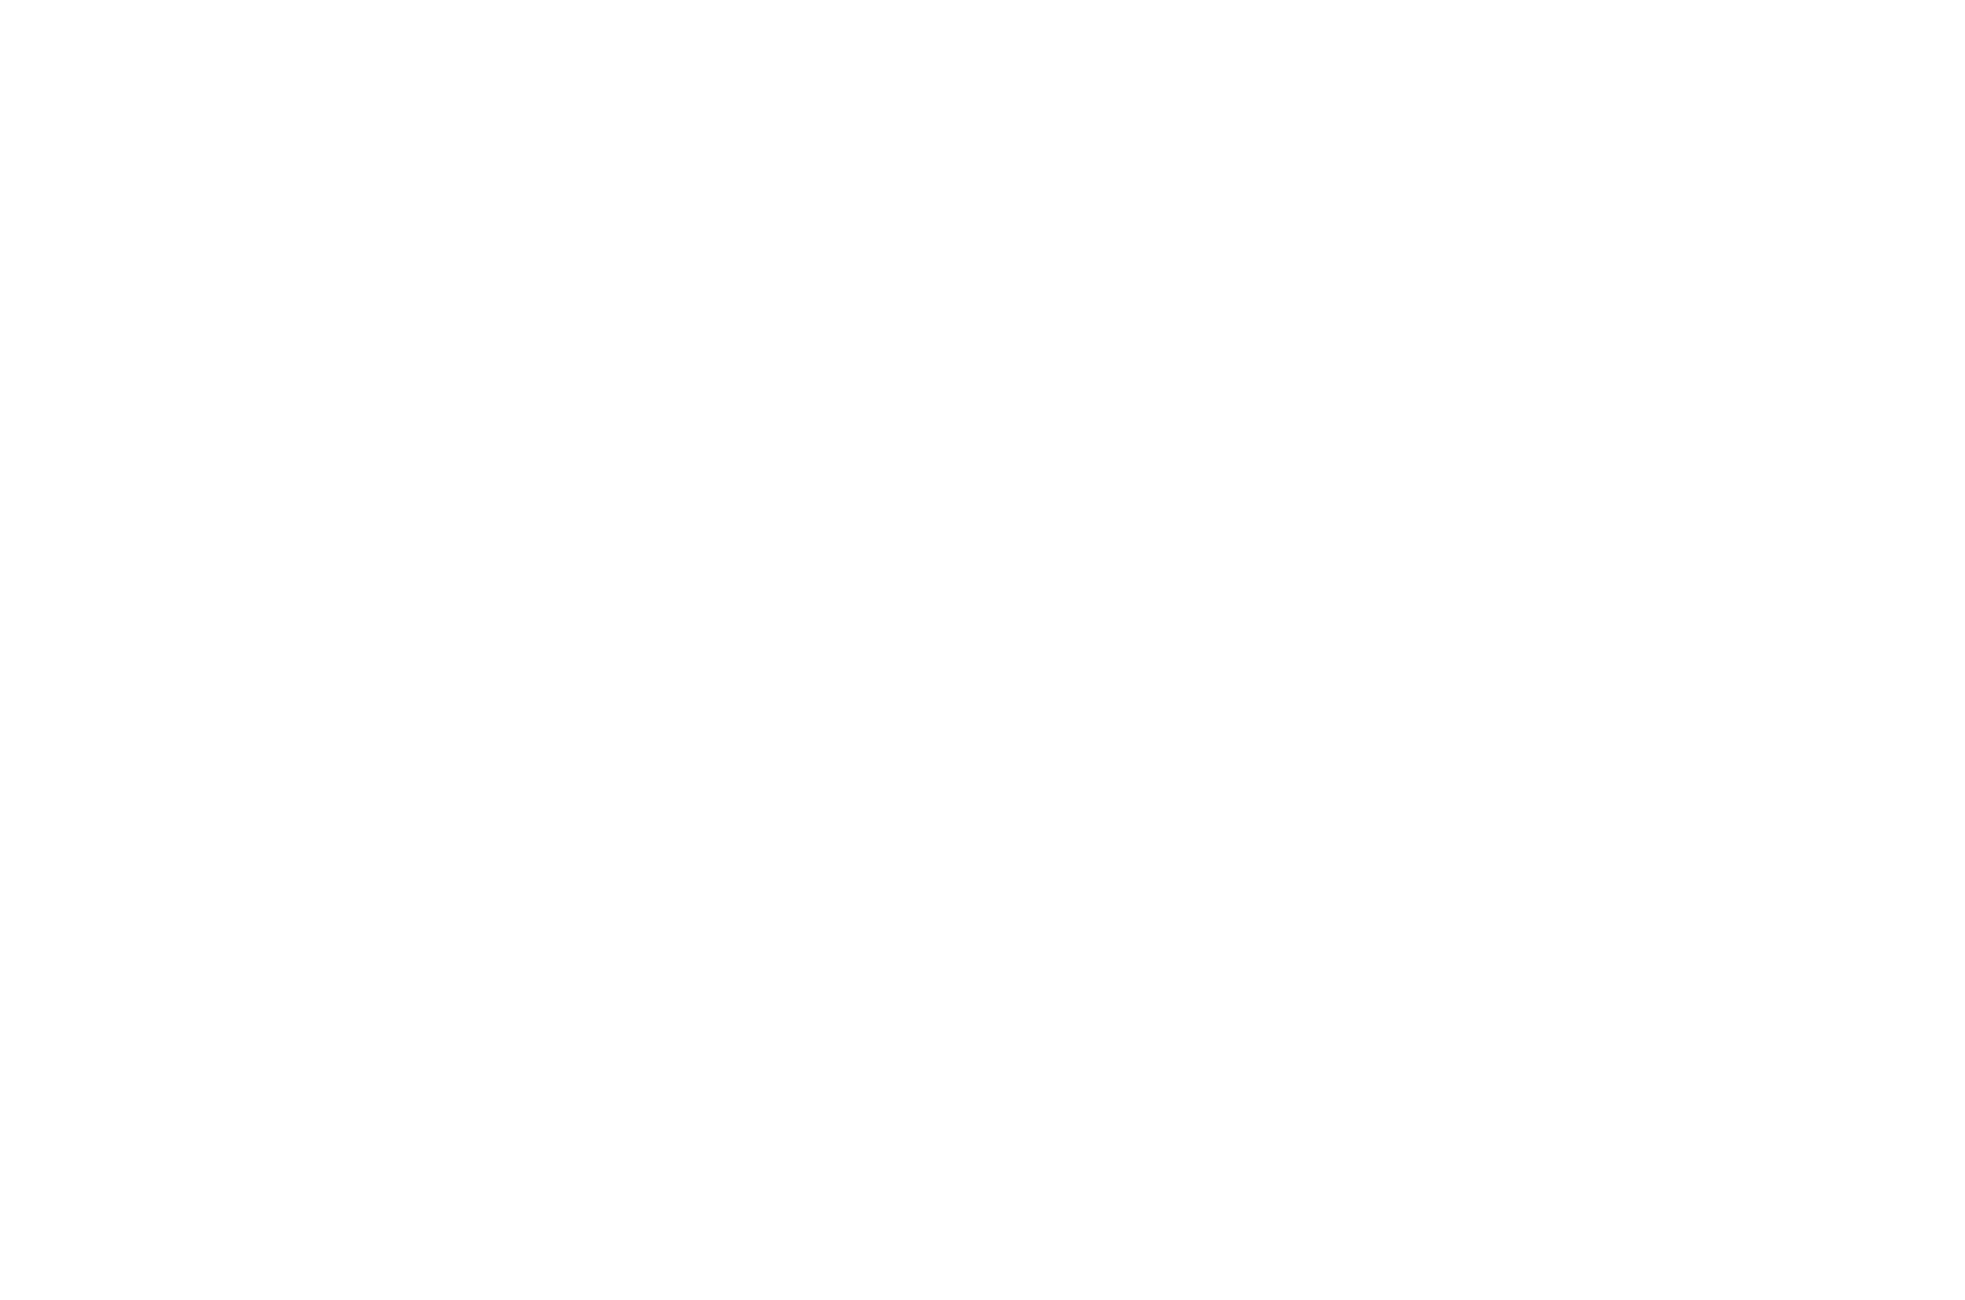 Ben Jones Celebrity Clayshoot - PNG